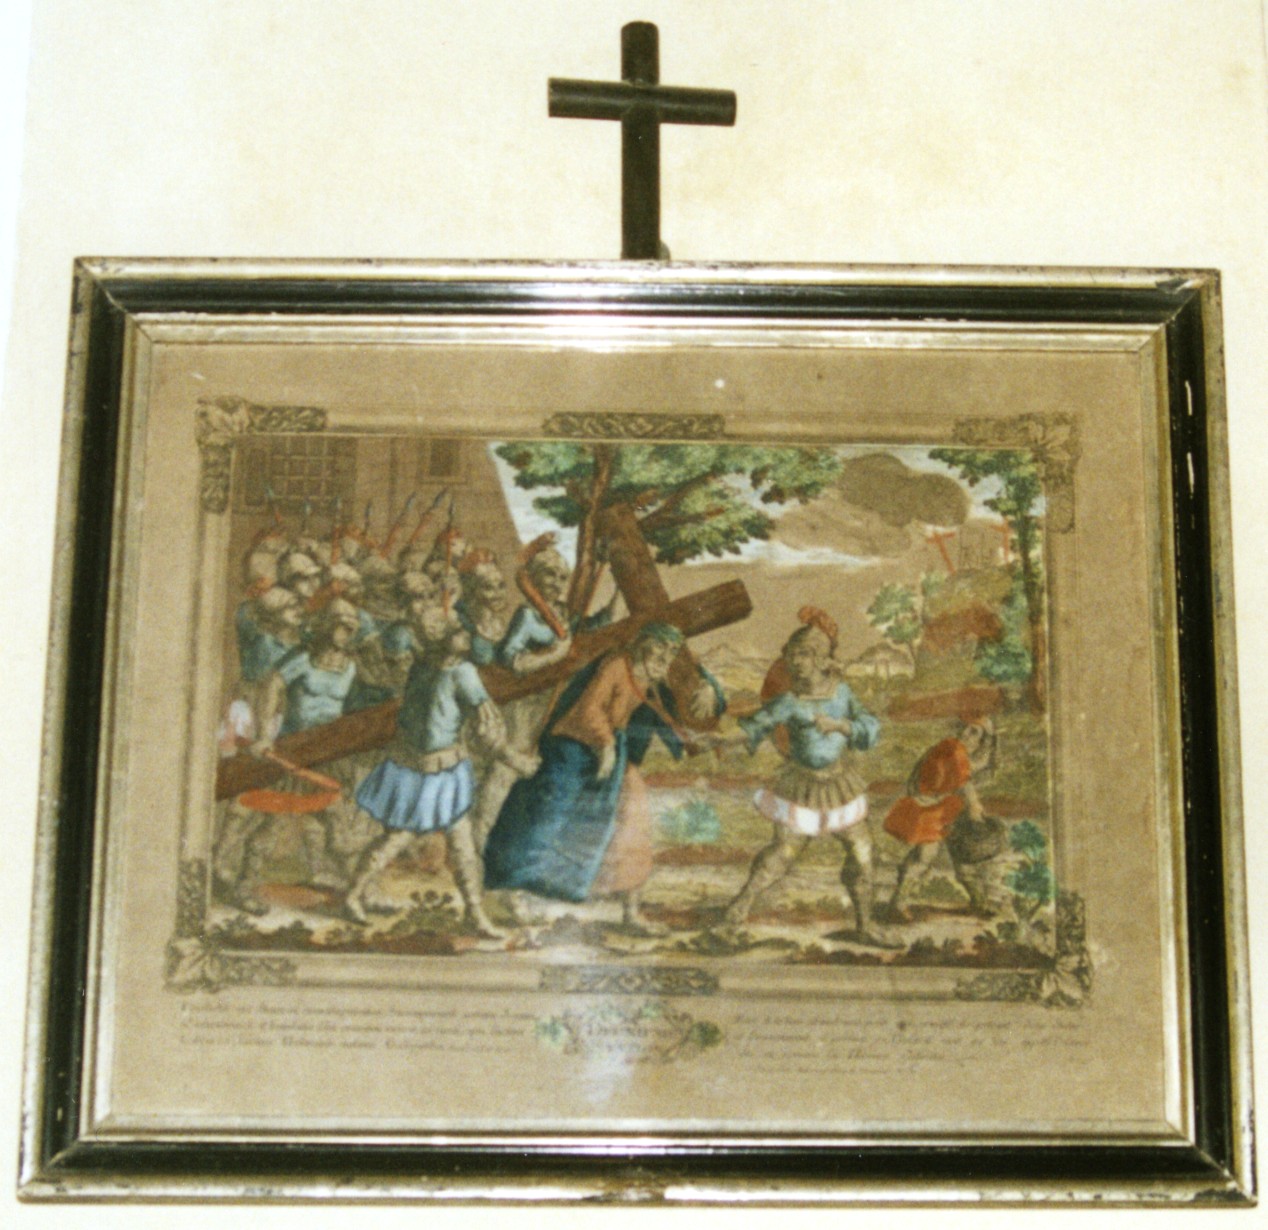 Stazione ii: gesù caricato della croce (via crucis)